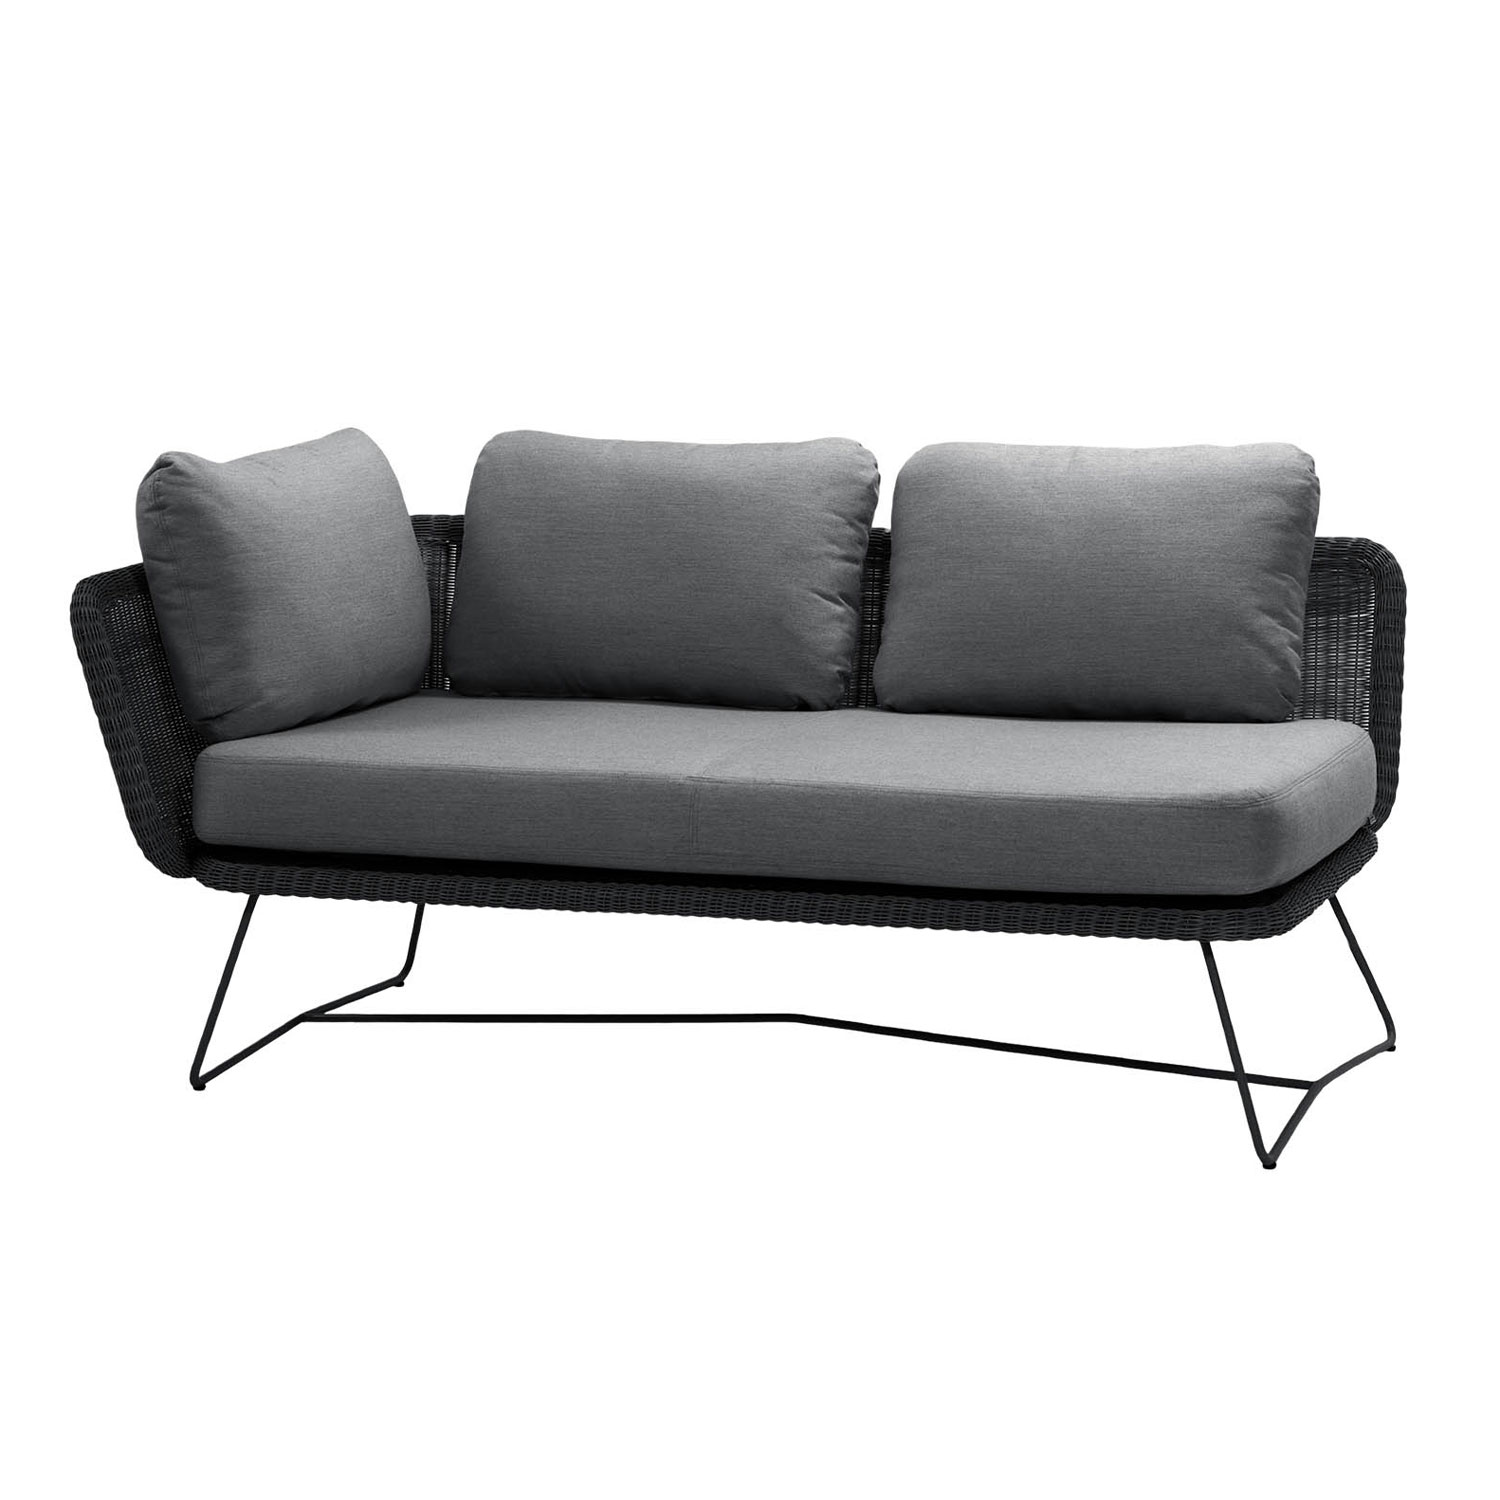 Horizon 2-Sitzer Sofa von Cane-line